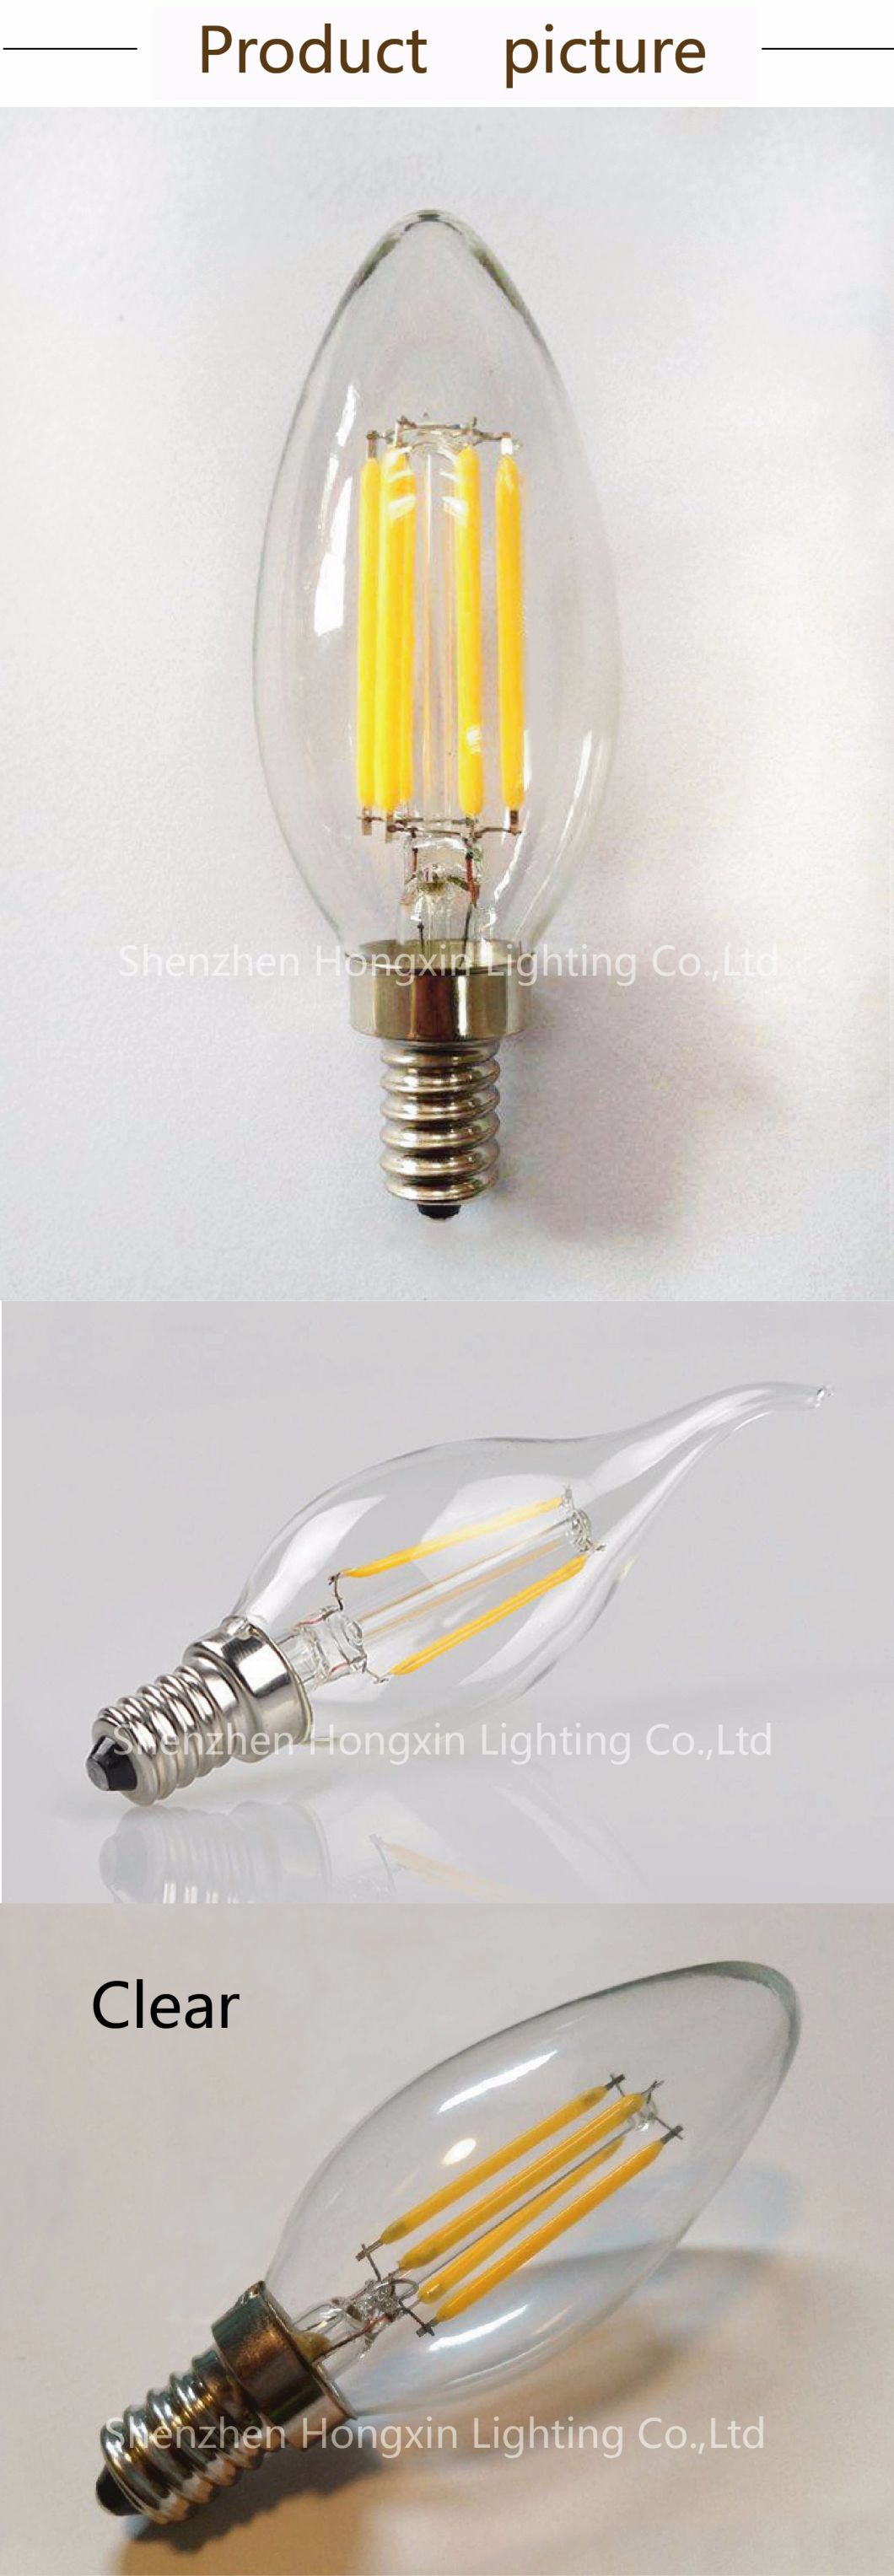 cUL/ETL Listed 4W/5W 120V Dimmable Ca11/B11/C35 Filament LED Bulb